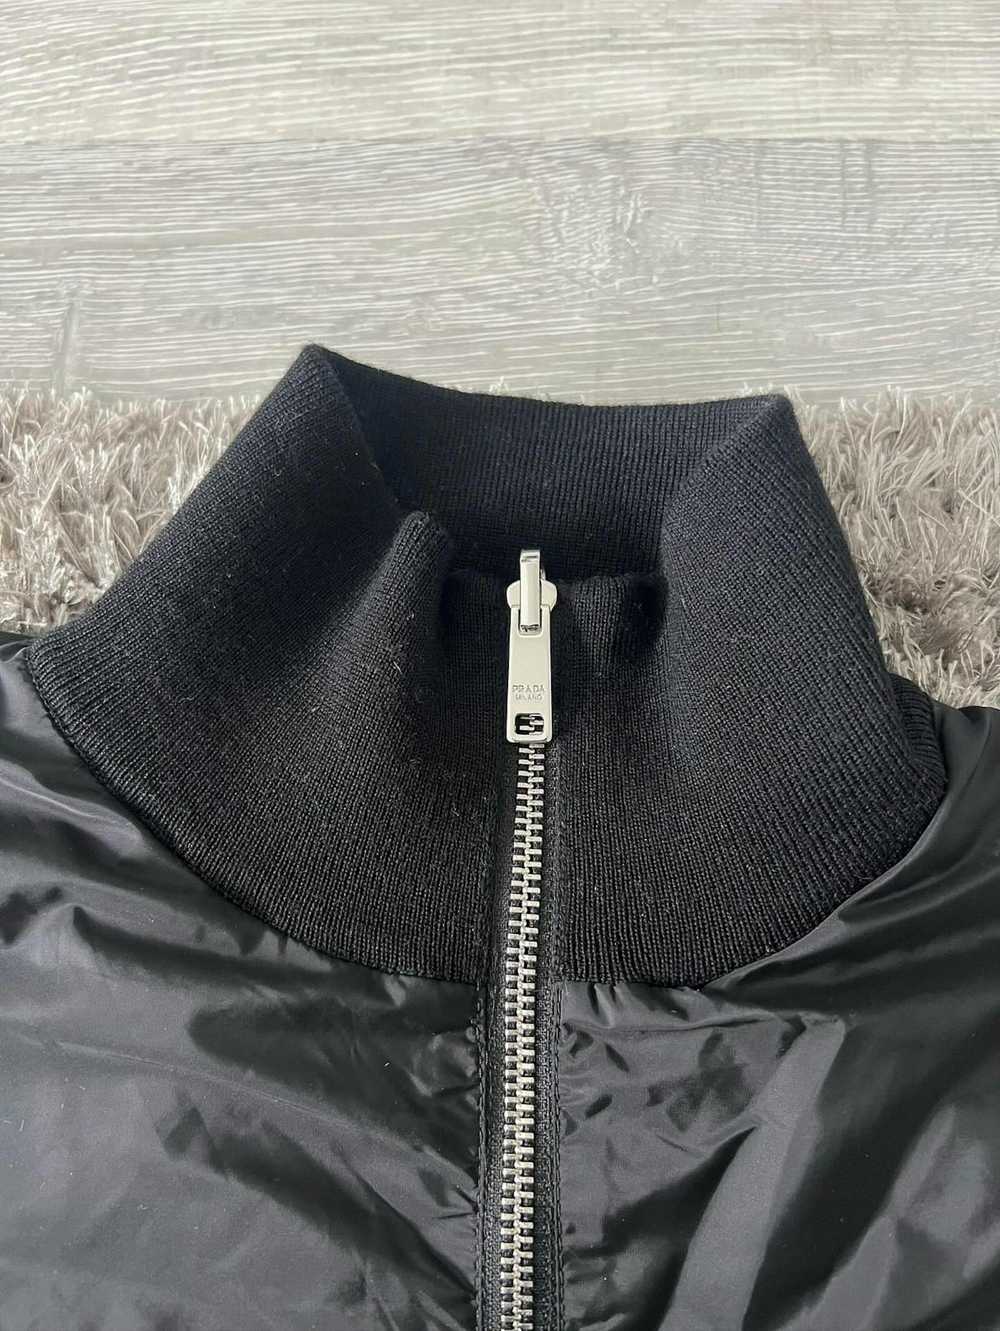 Prada Prada Reversible Wool & Re Nylon Jacket - image 7